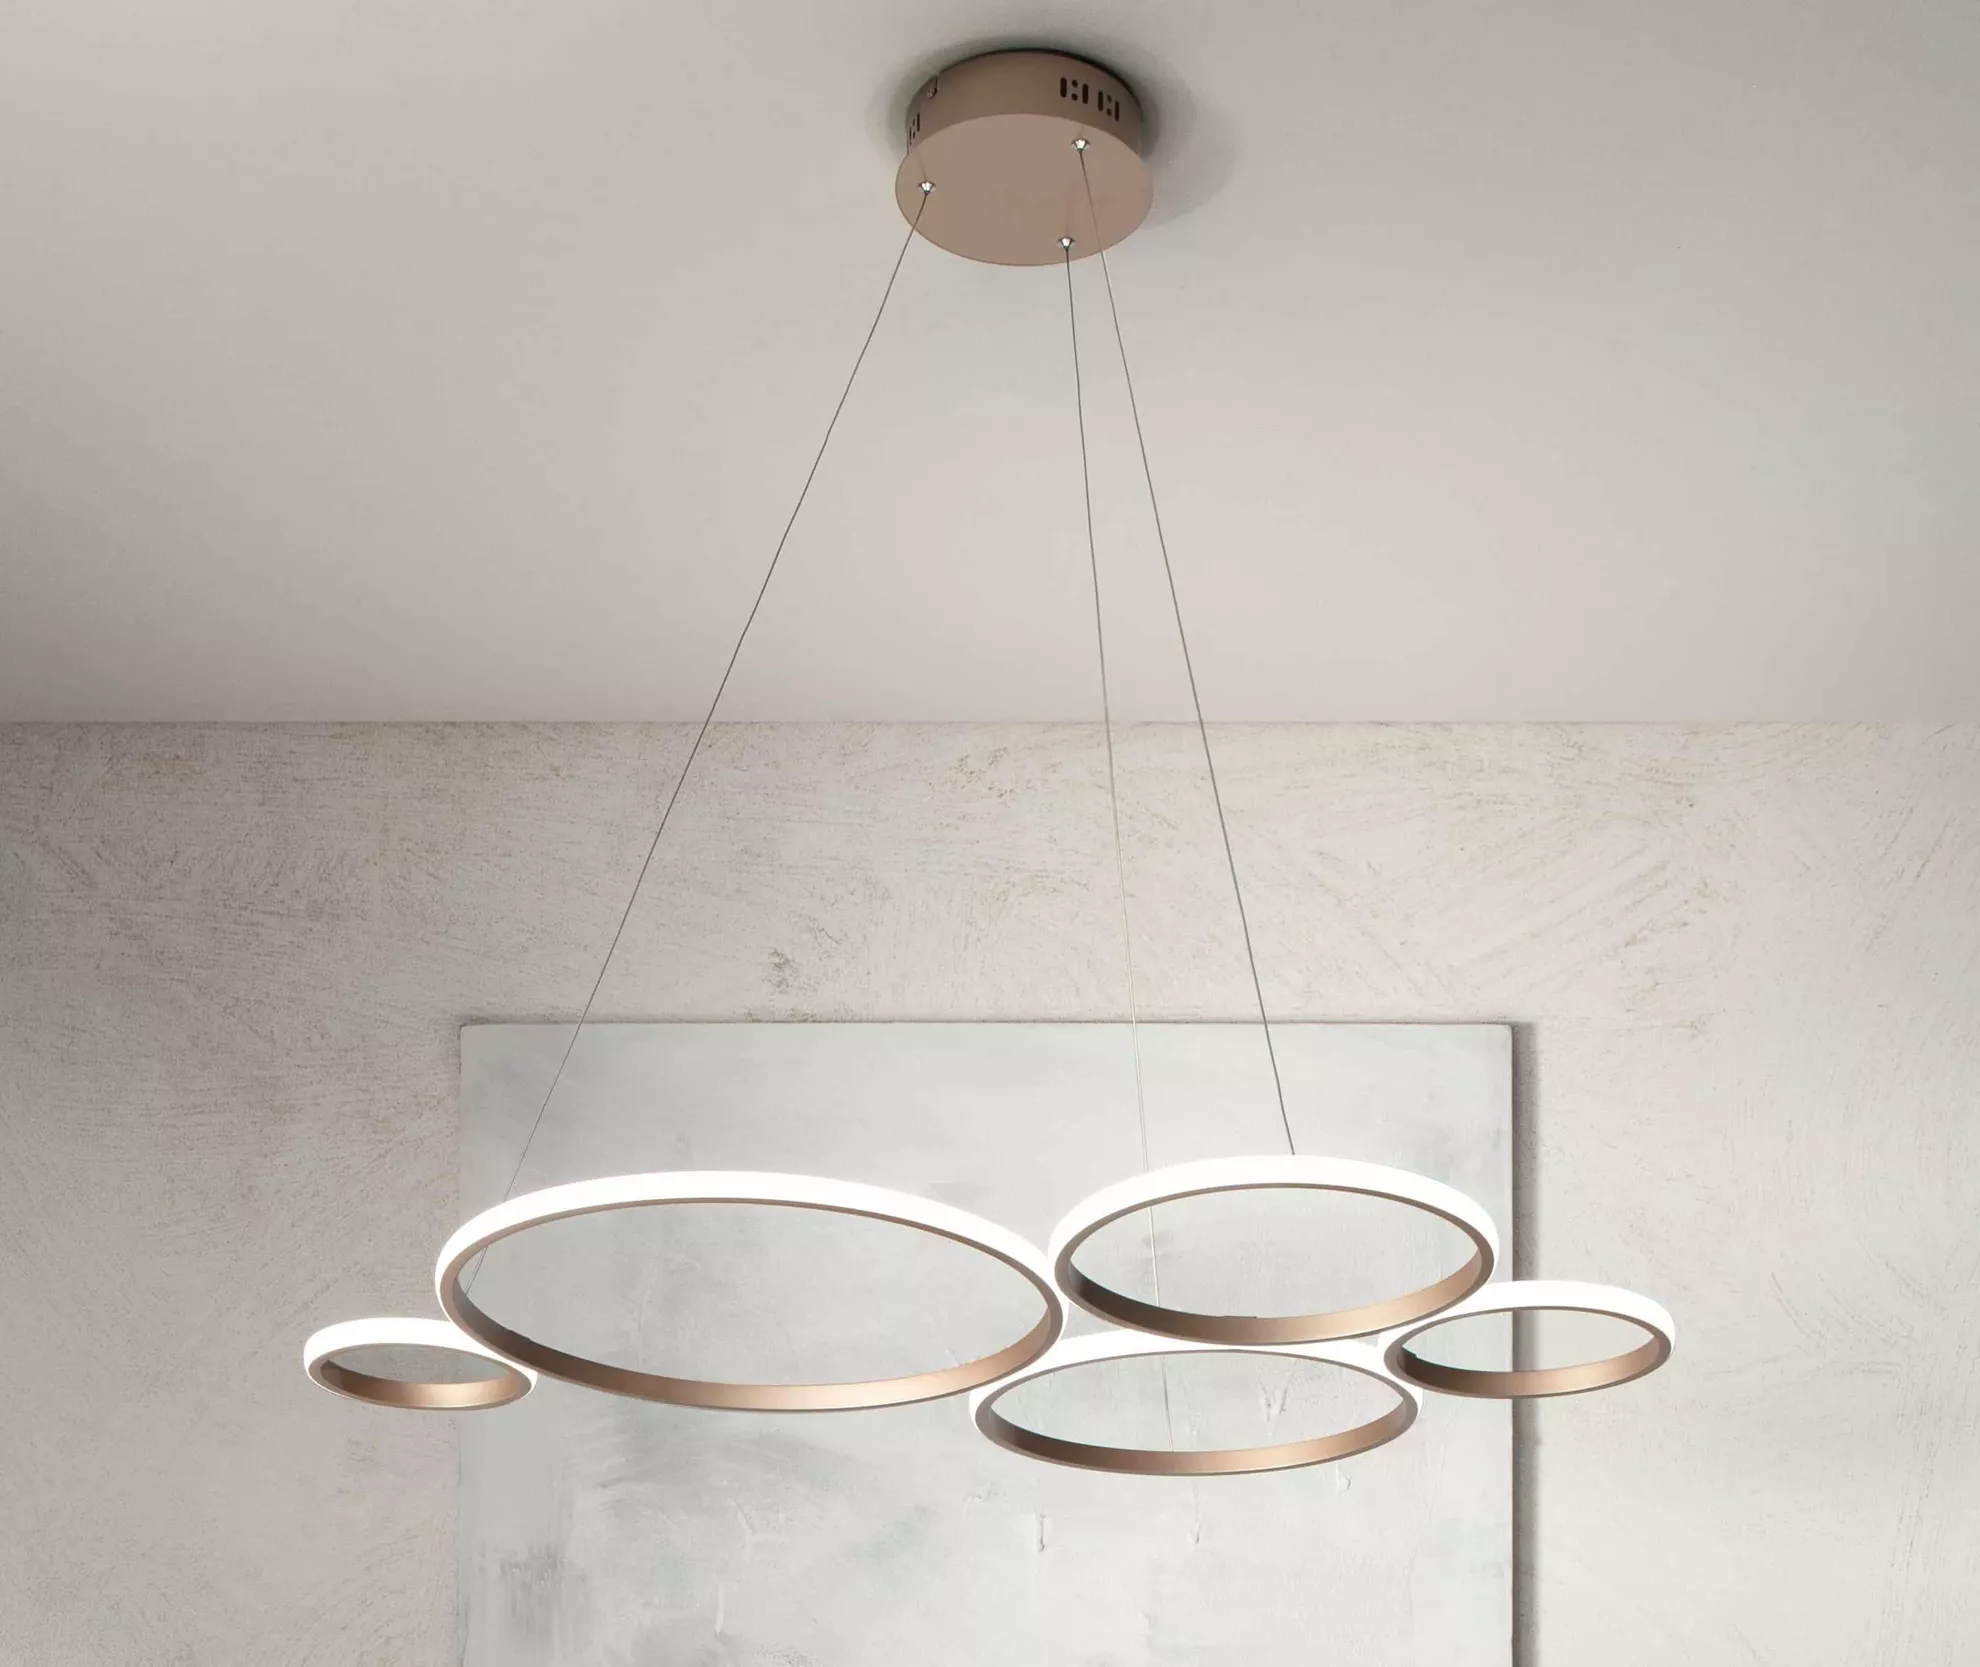 Lampadario a sospensione led 52w con cerchi argento design moderno per  camera cucina salotto